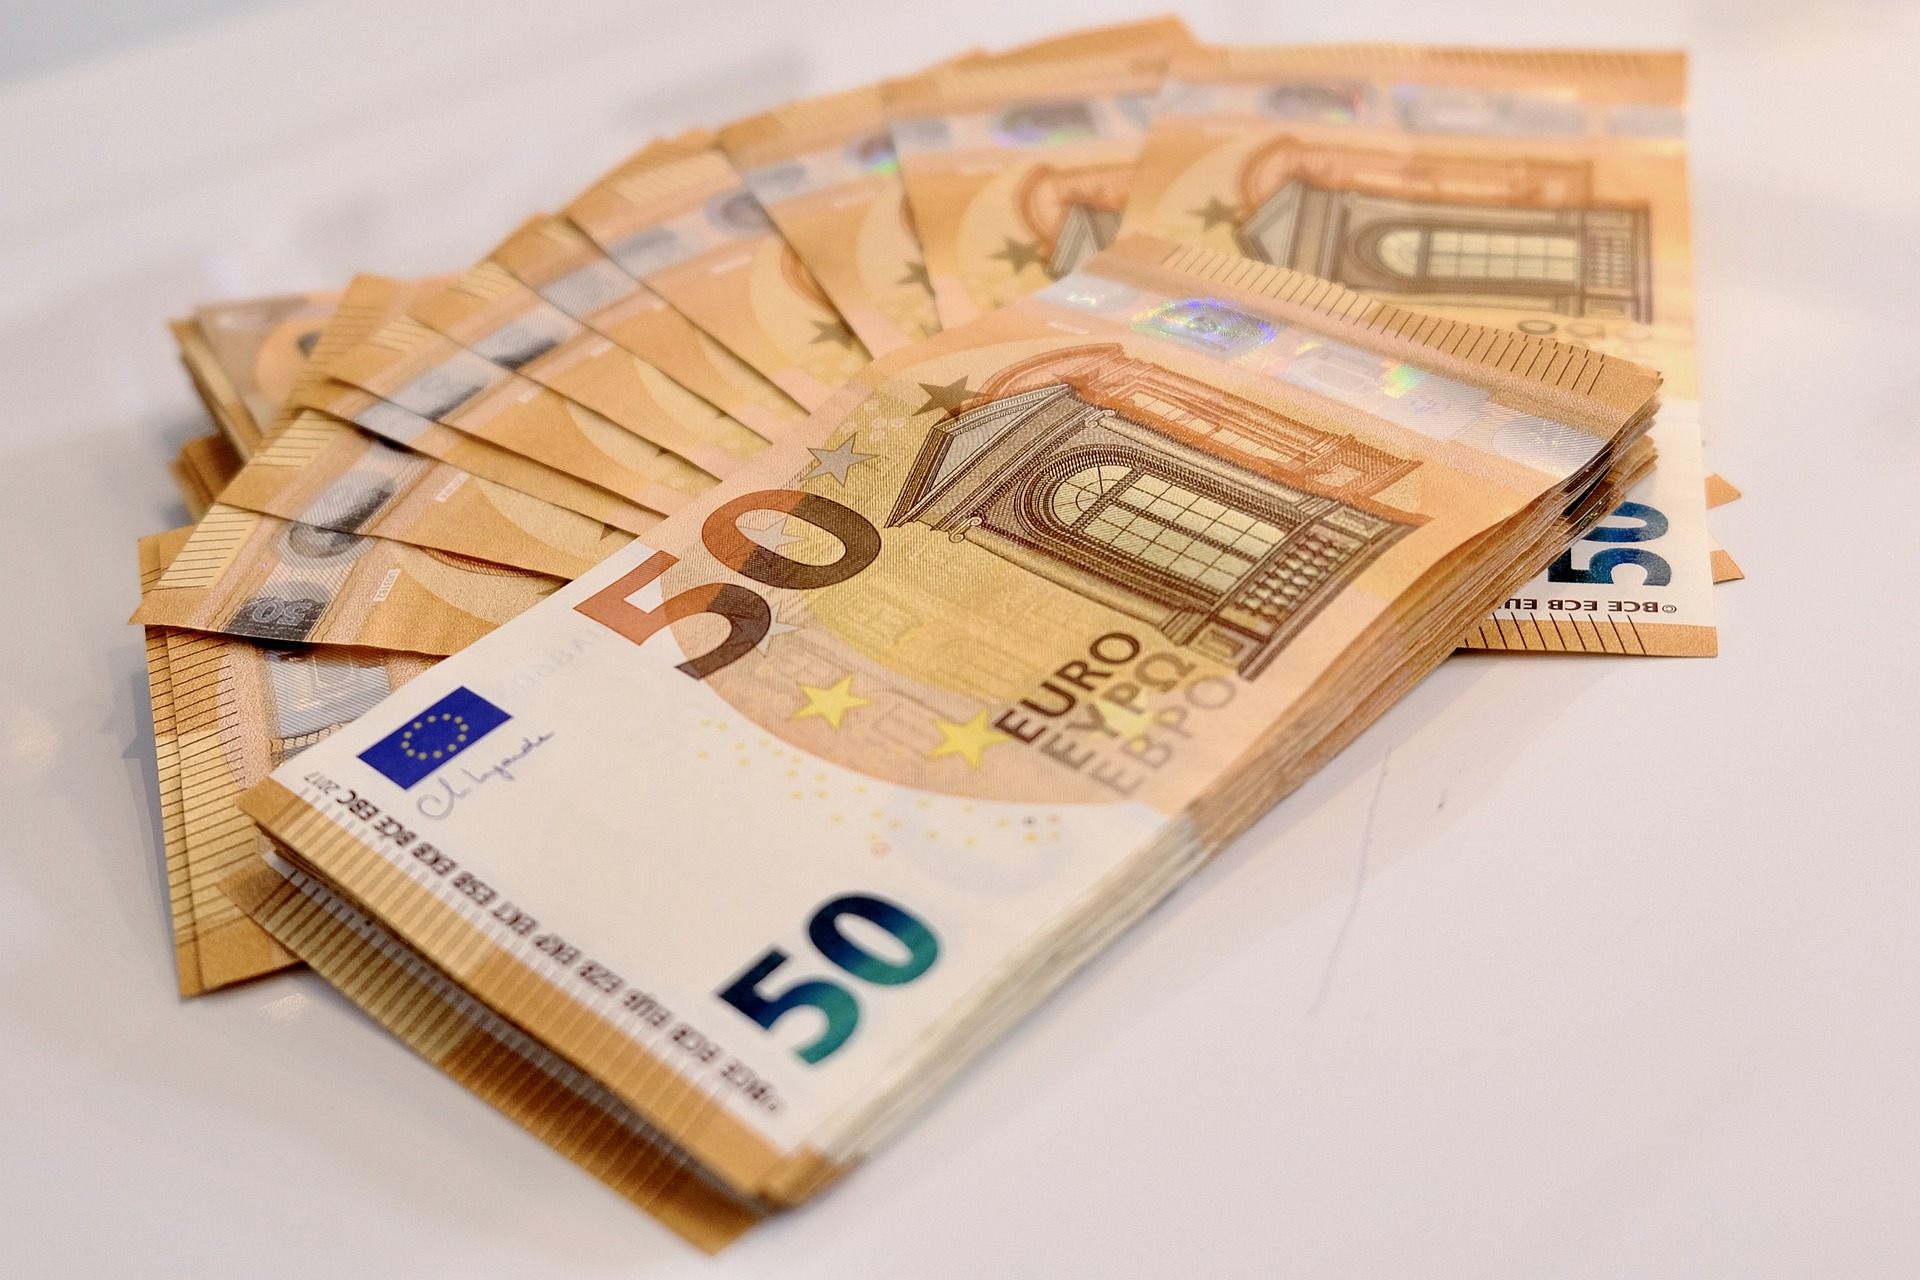 Δύο άφαντοι ειδικοί λογαριασμοί – βδέλλες  δεκάδων δισ. ευρώ!